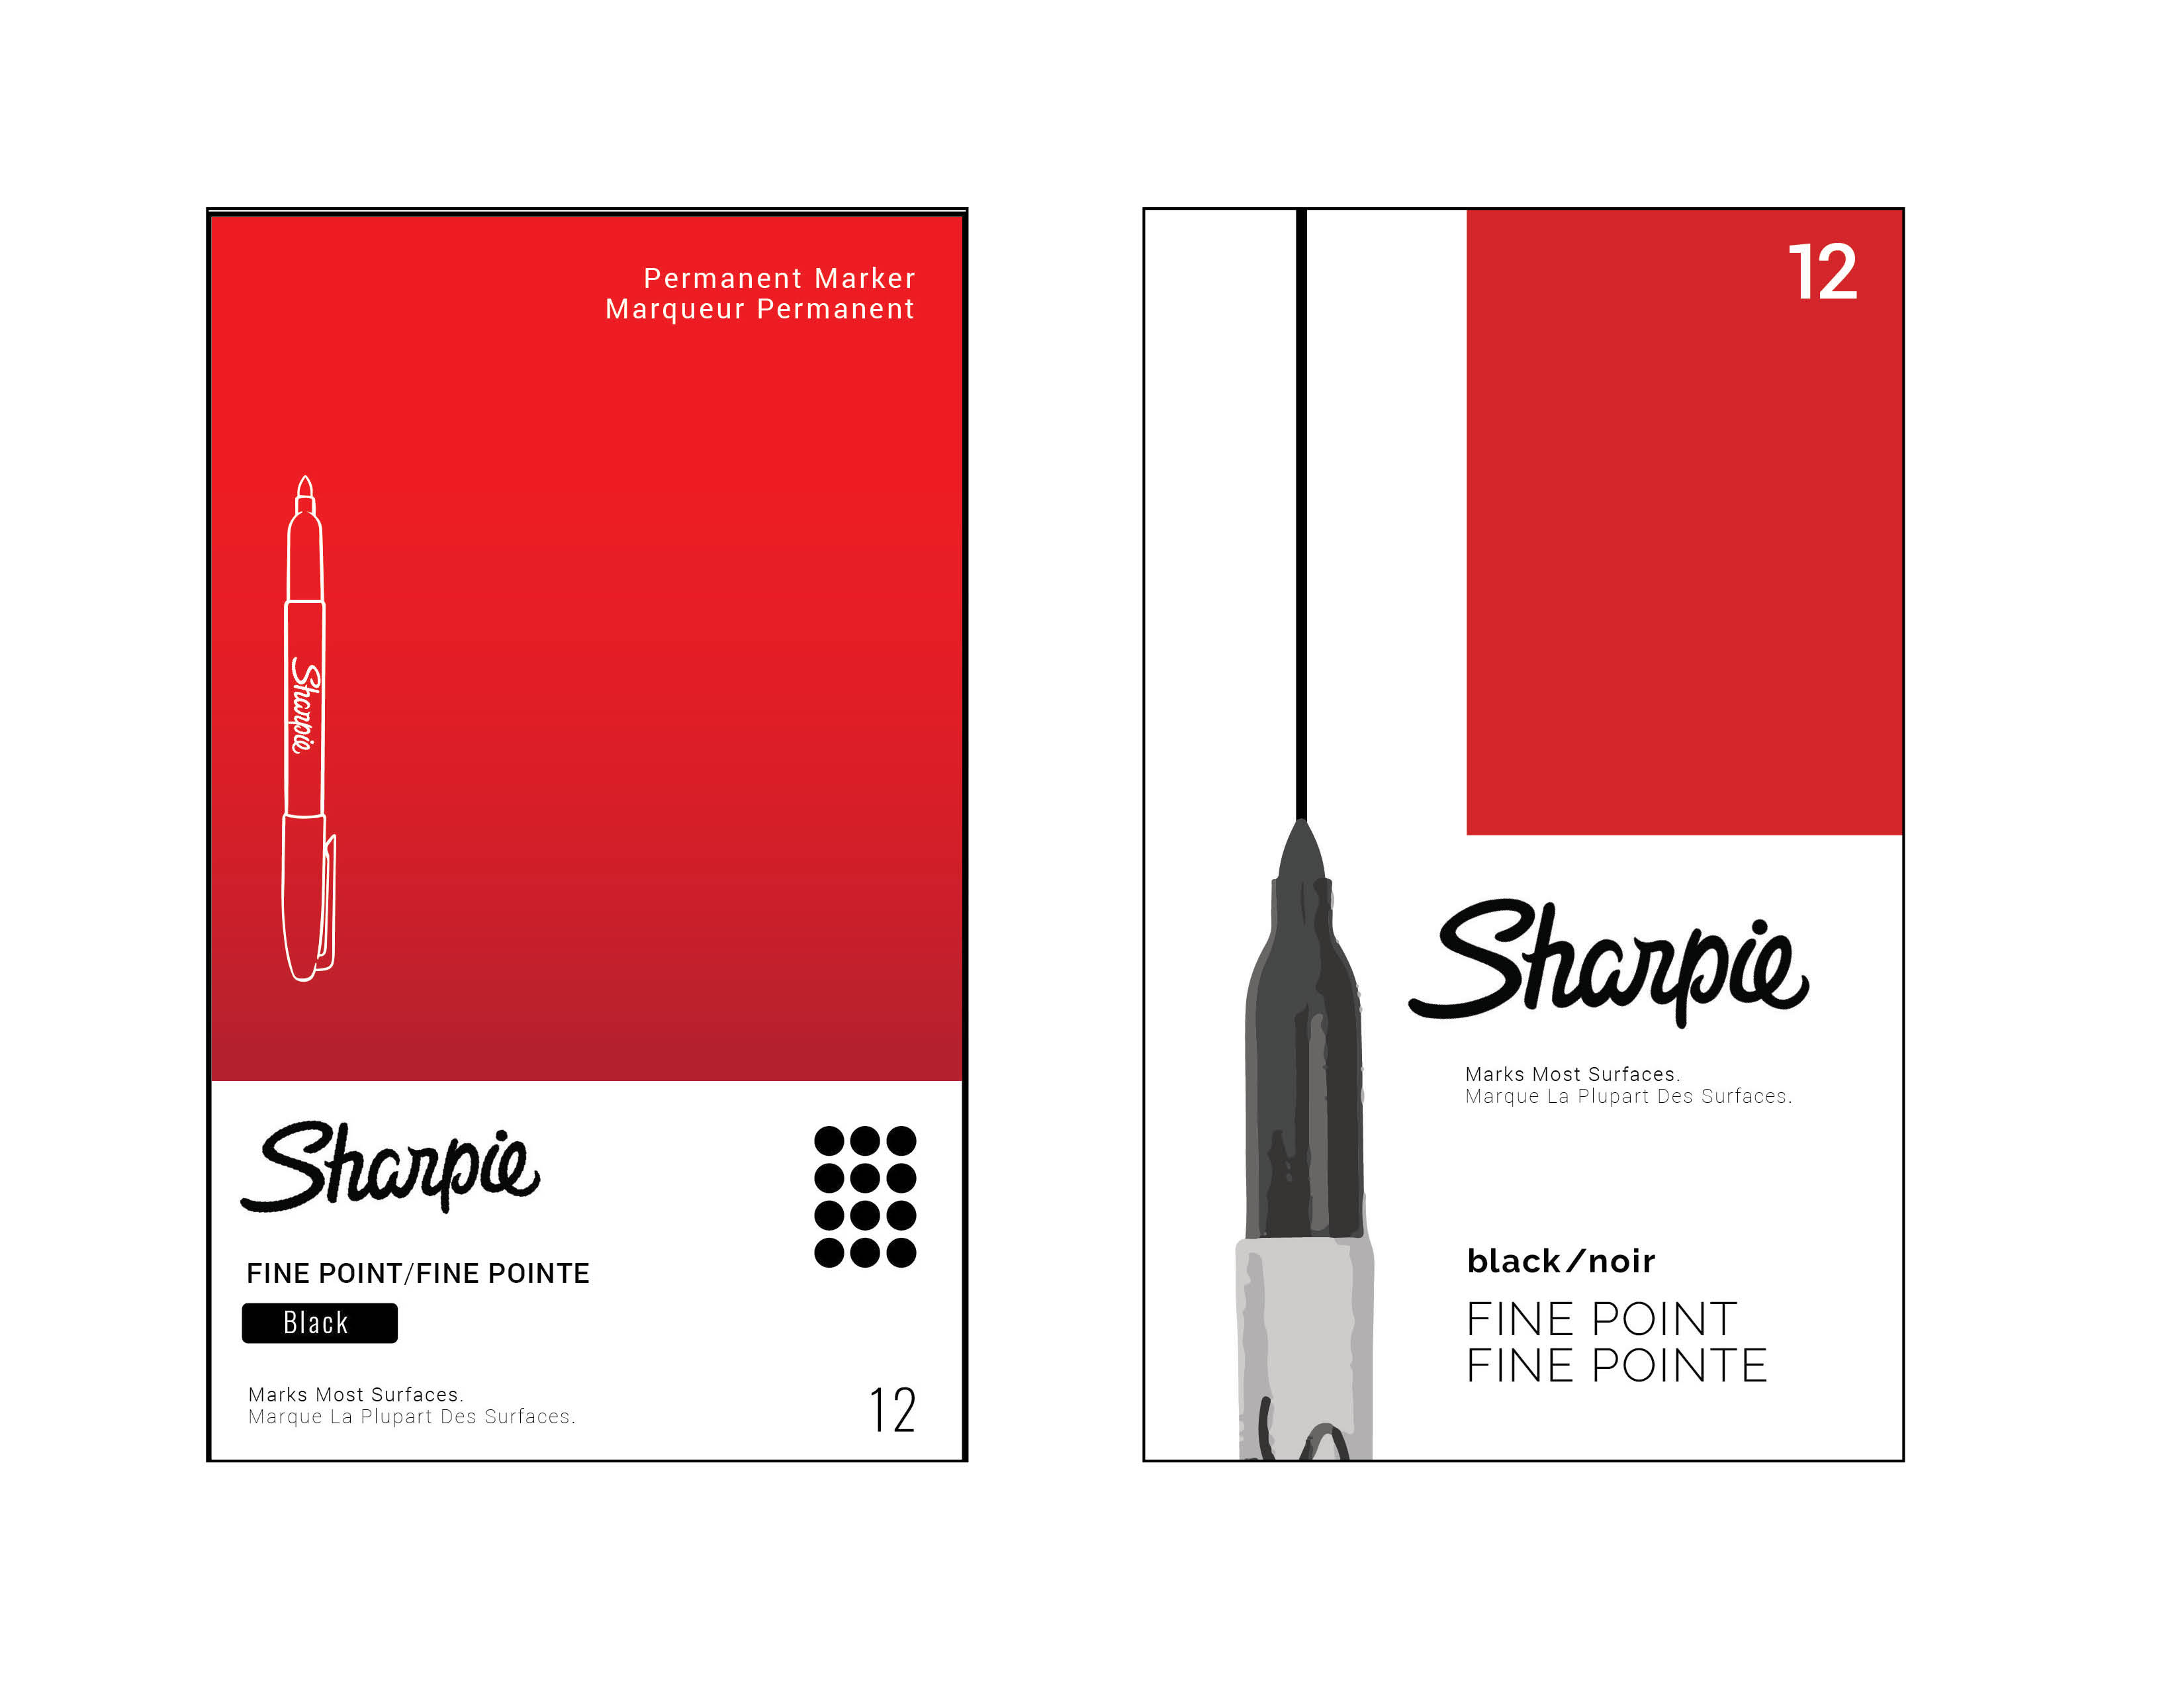 Sharpie Package Re-Design